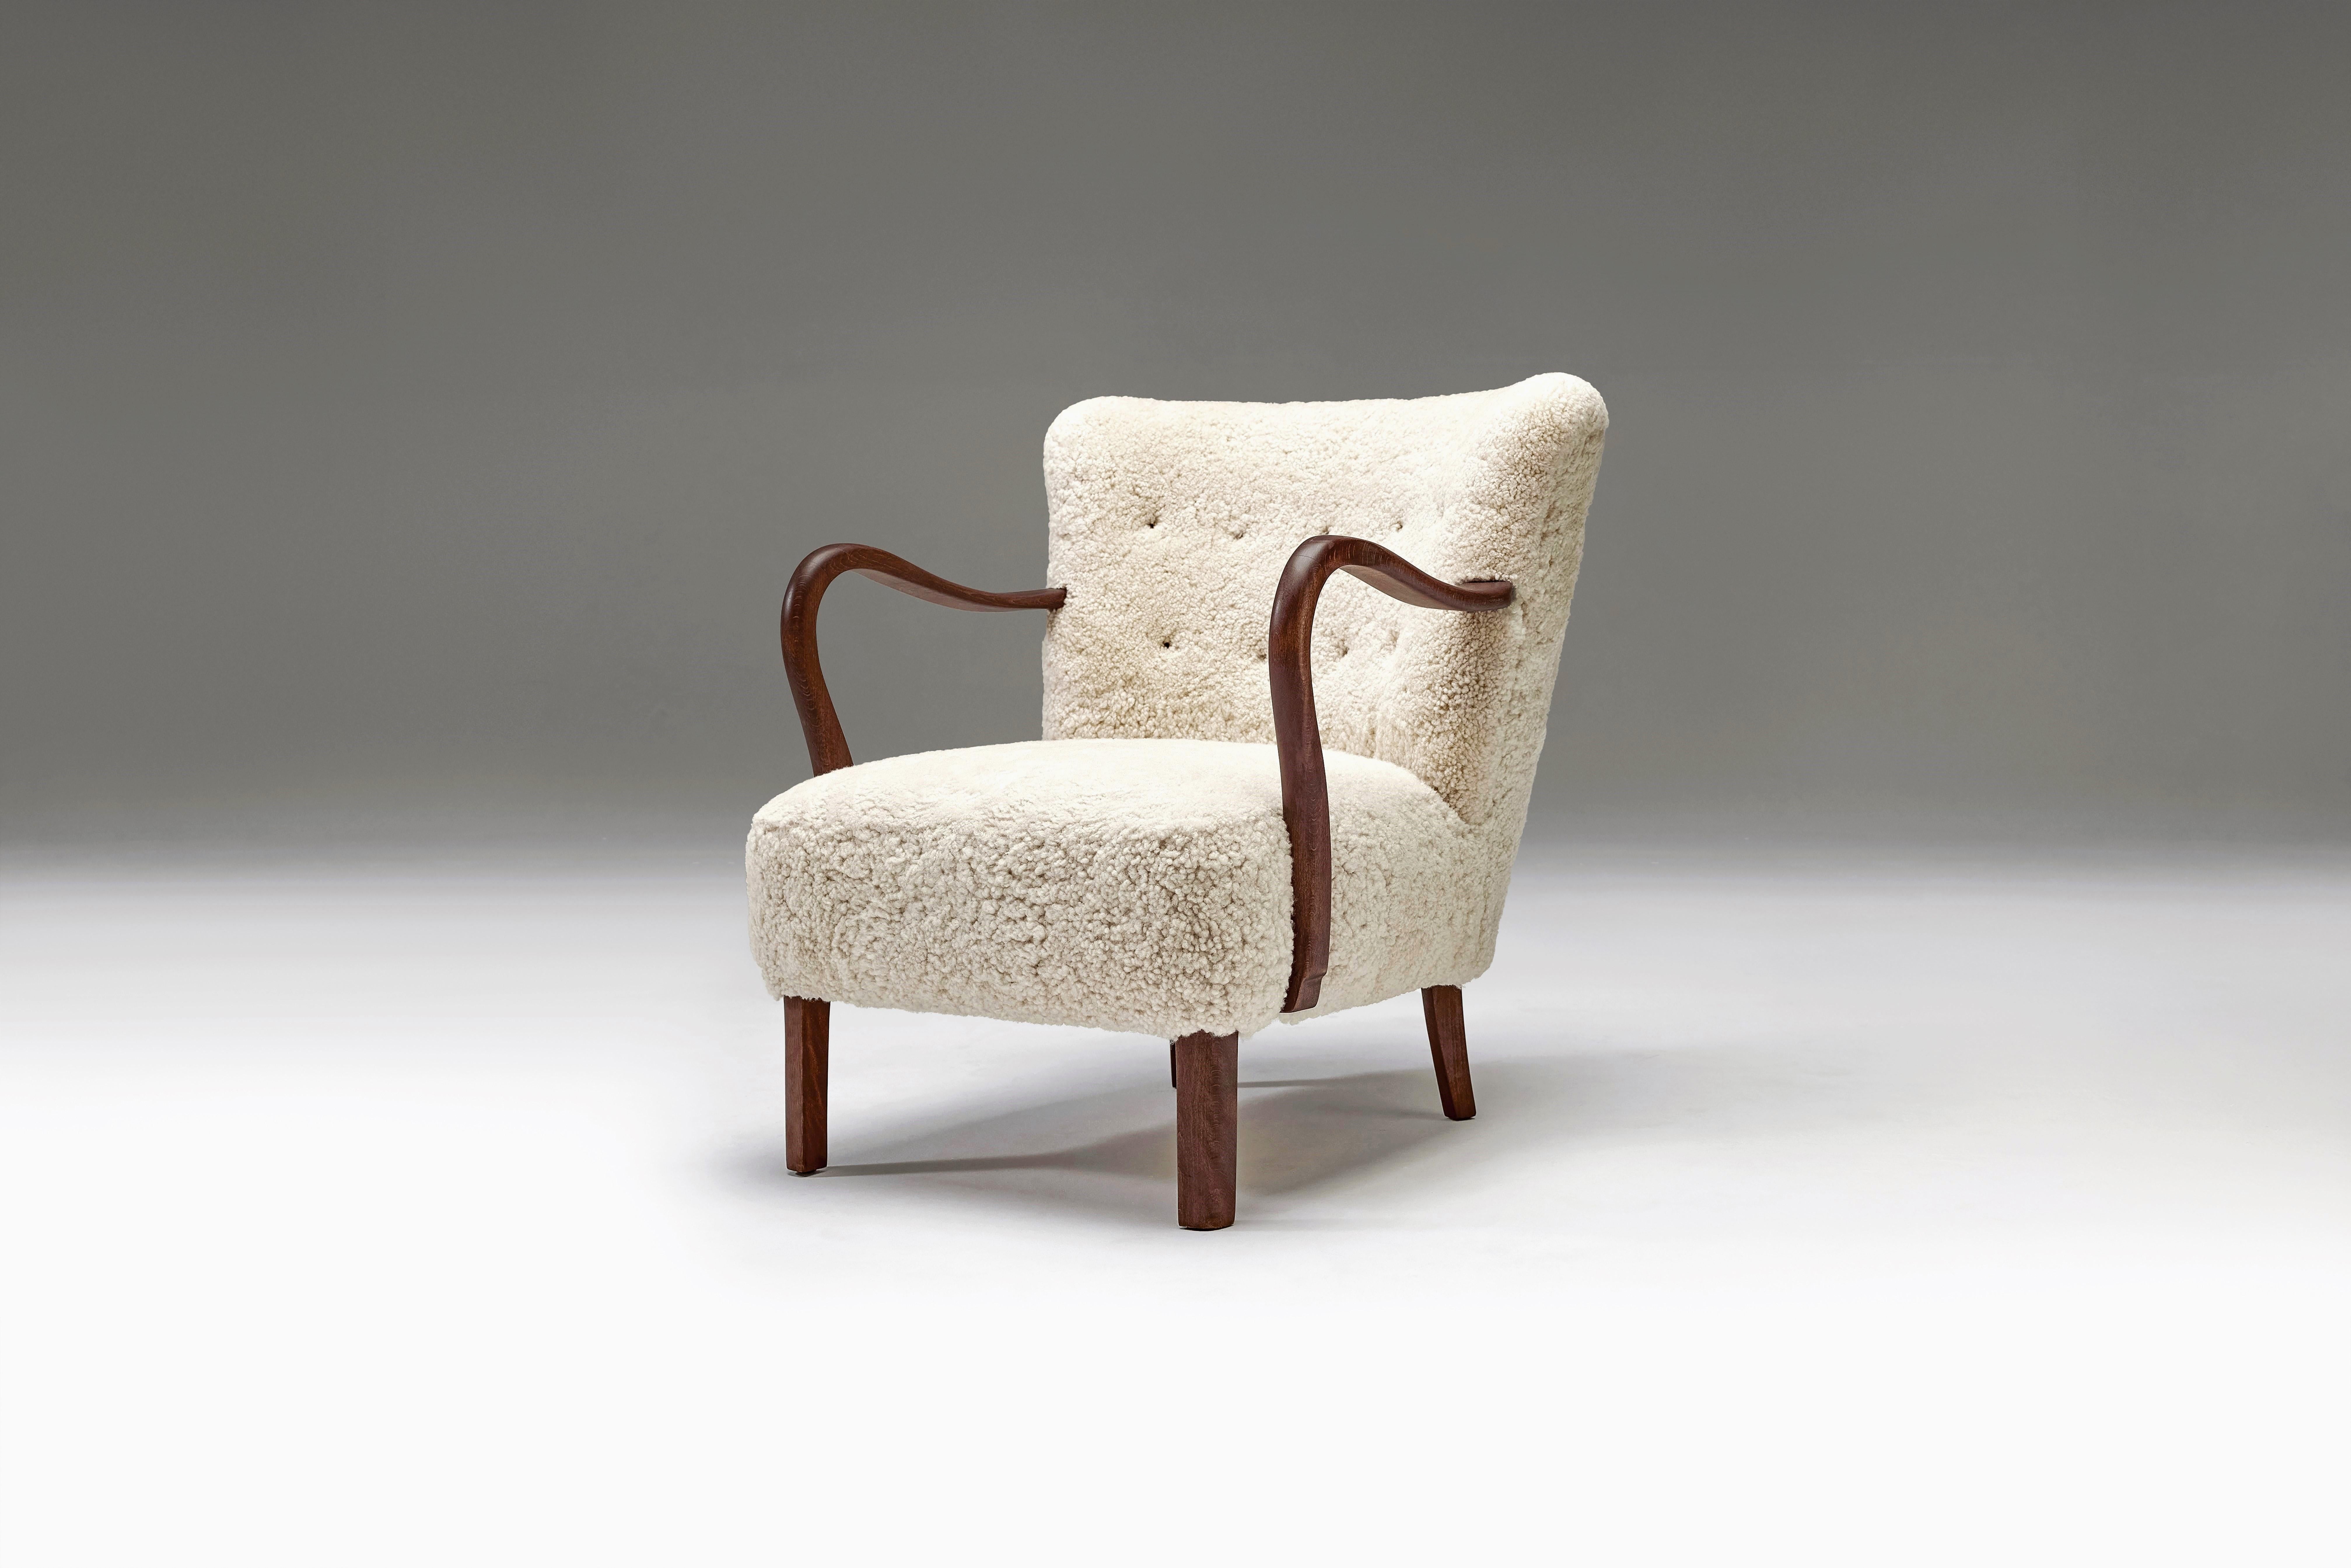 Die exquisite Handwerkskunst der dänischen Tischlerei und die Betonung der modernen Ästhetik sind in diesem schönen Sessel offensichtlich. Es verbindet nahtlos die zeitlose Anziehungskraft des traditionellen Designs mit der zeitgenössischen